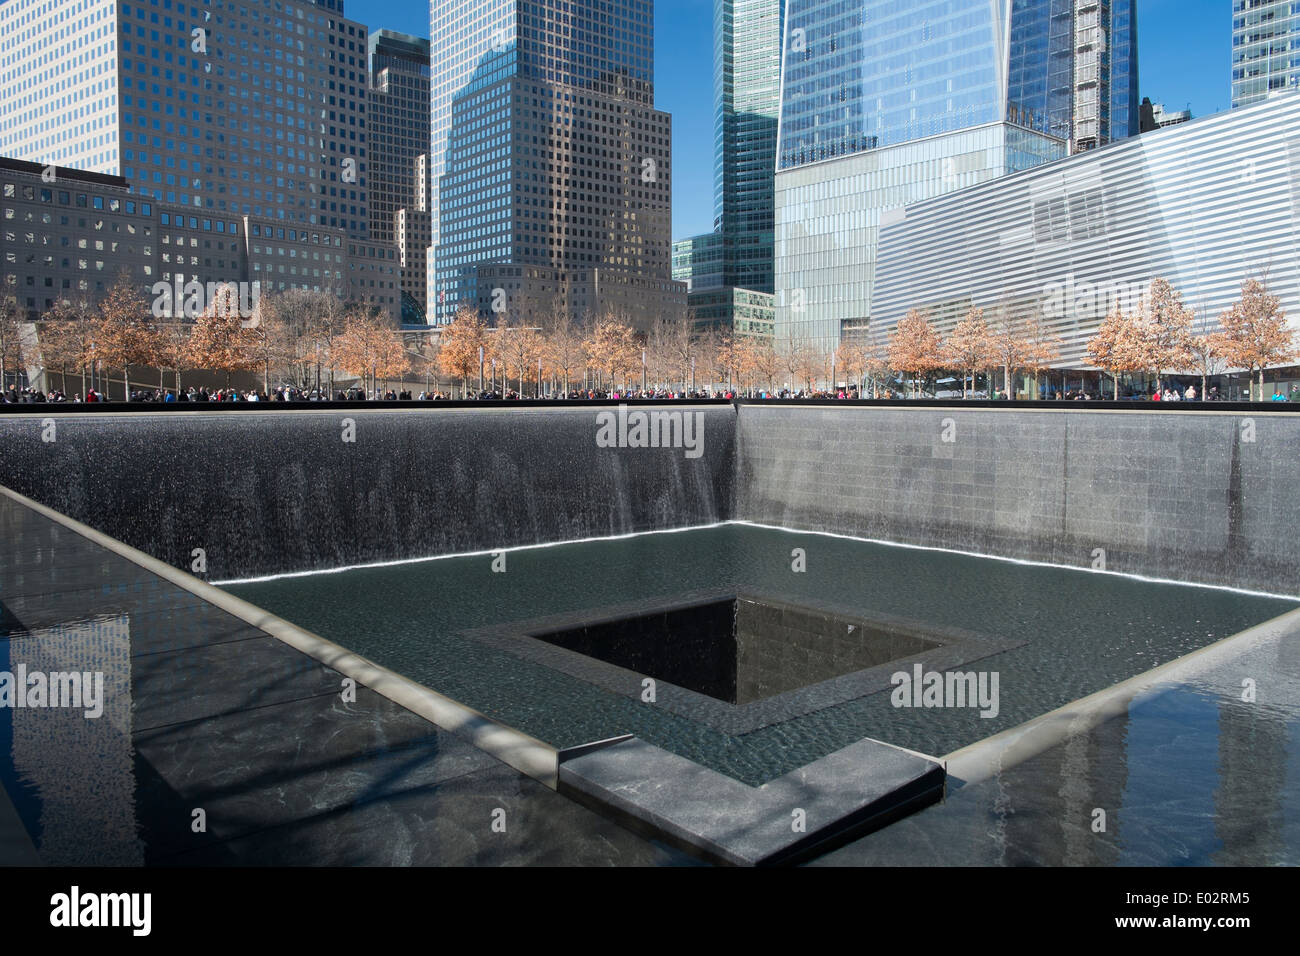 Le site du mémorial de ground zero le 11 septembre pour l'Organisation mondiale du commerce tours de New York, USA Banque D'Images